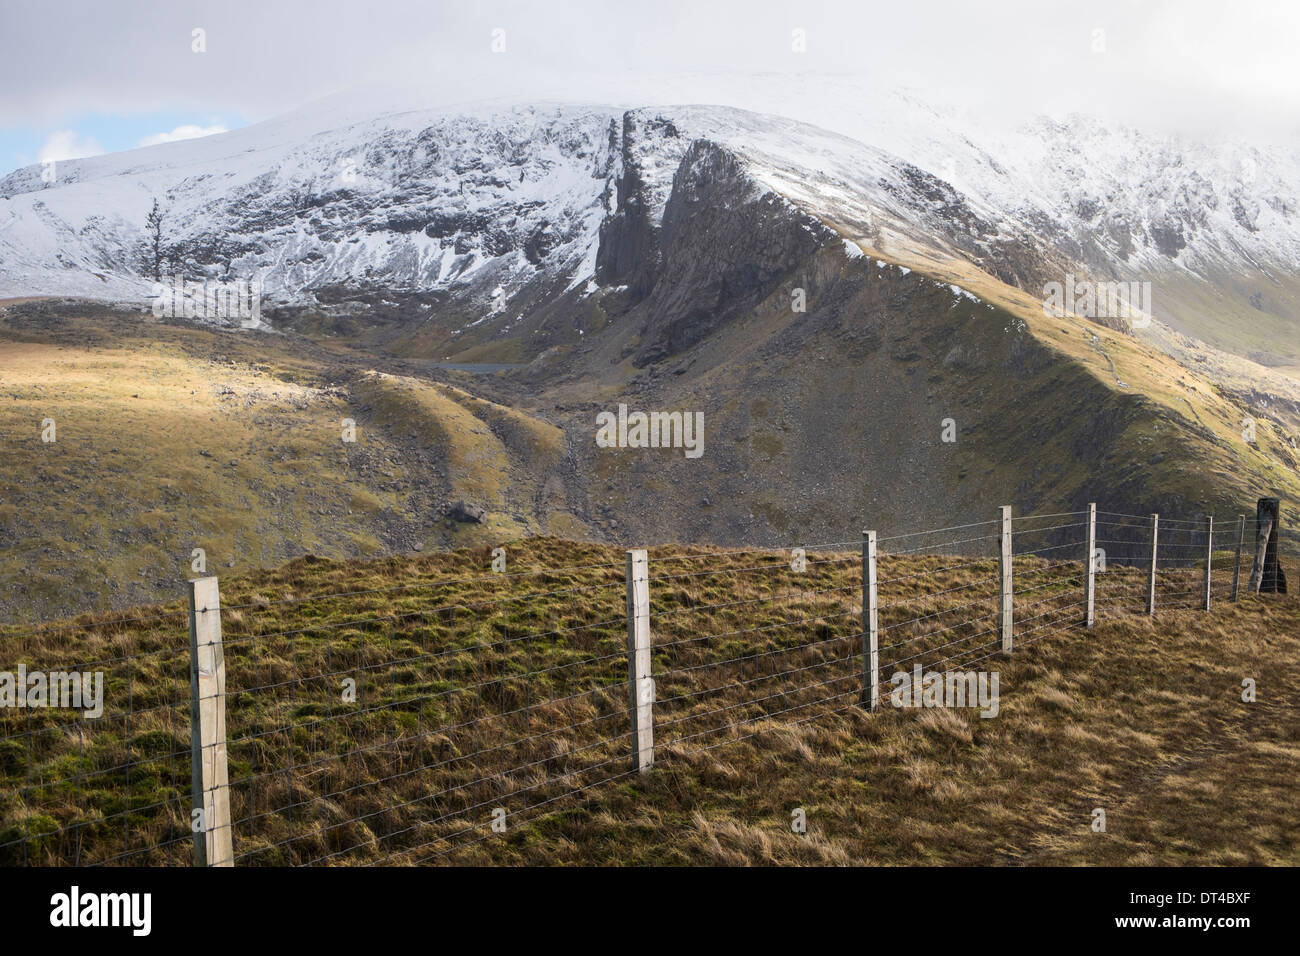 Vue de Clogwyn Du'r Arddu Brwynog mcg ci-dessus sur les pentes du Mont Snowdon de Moel Cynghorion en hiver. Pays de Galles Snowdonia UK Banque D'Images